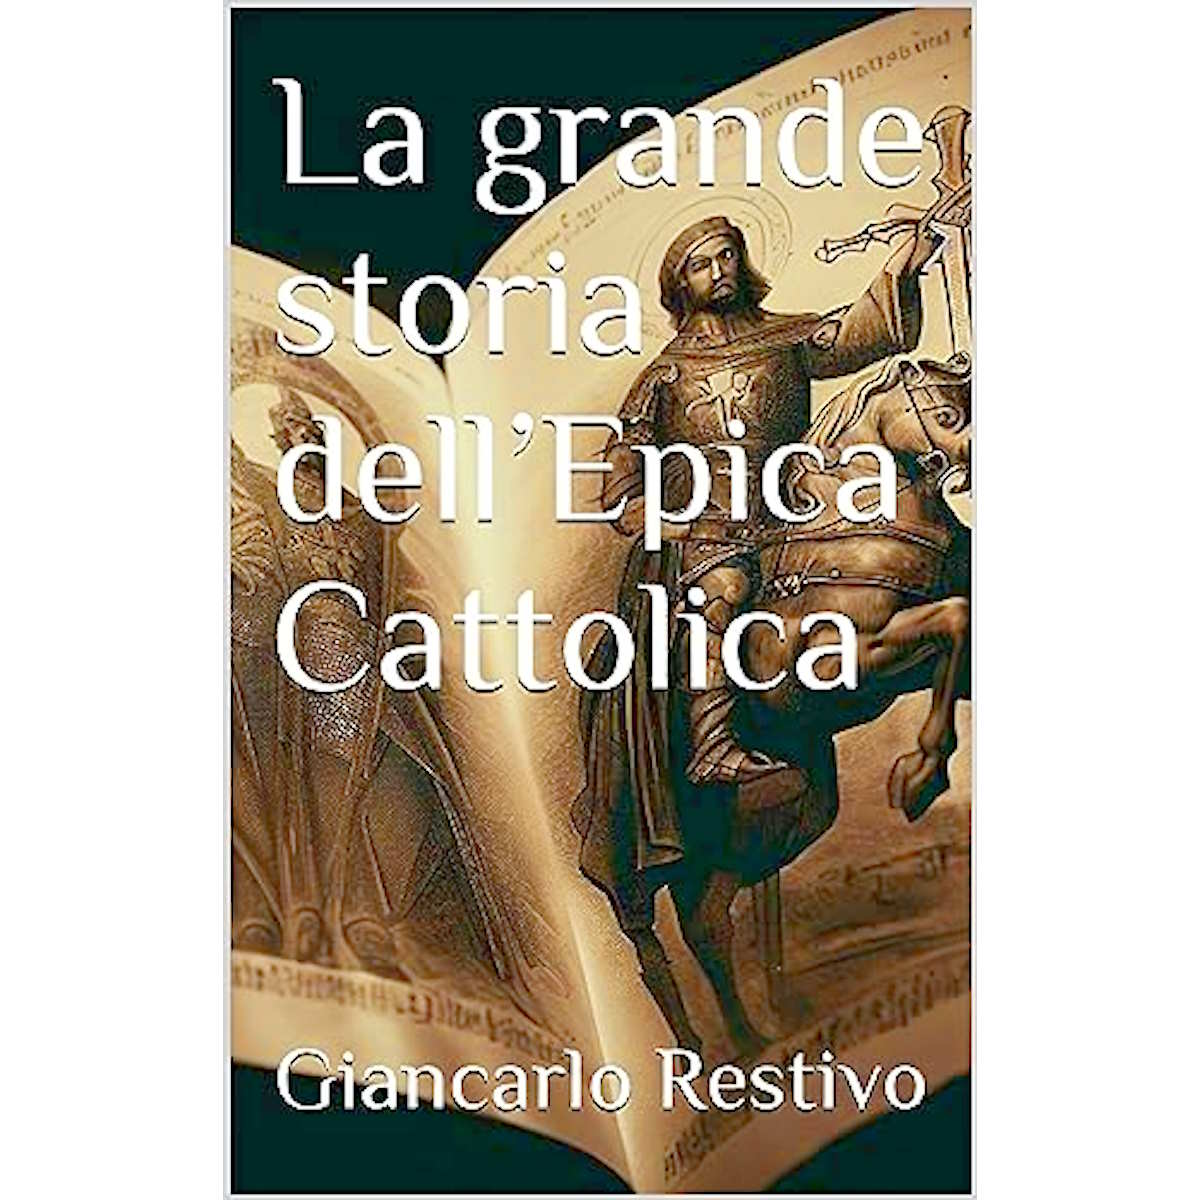 La grande storia dell'Epica Cattolica di Giancarlo Restivo: una esplorazione profonda di fede, cultura e immaginazione